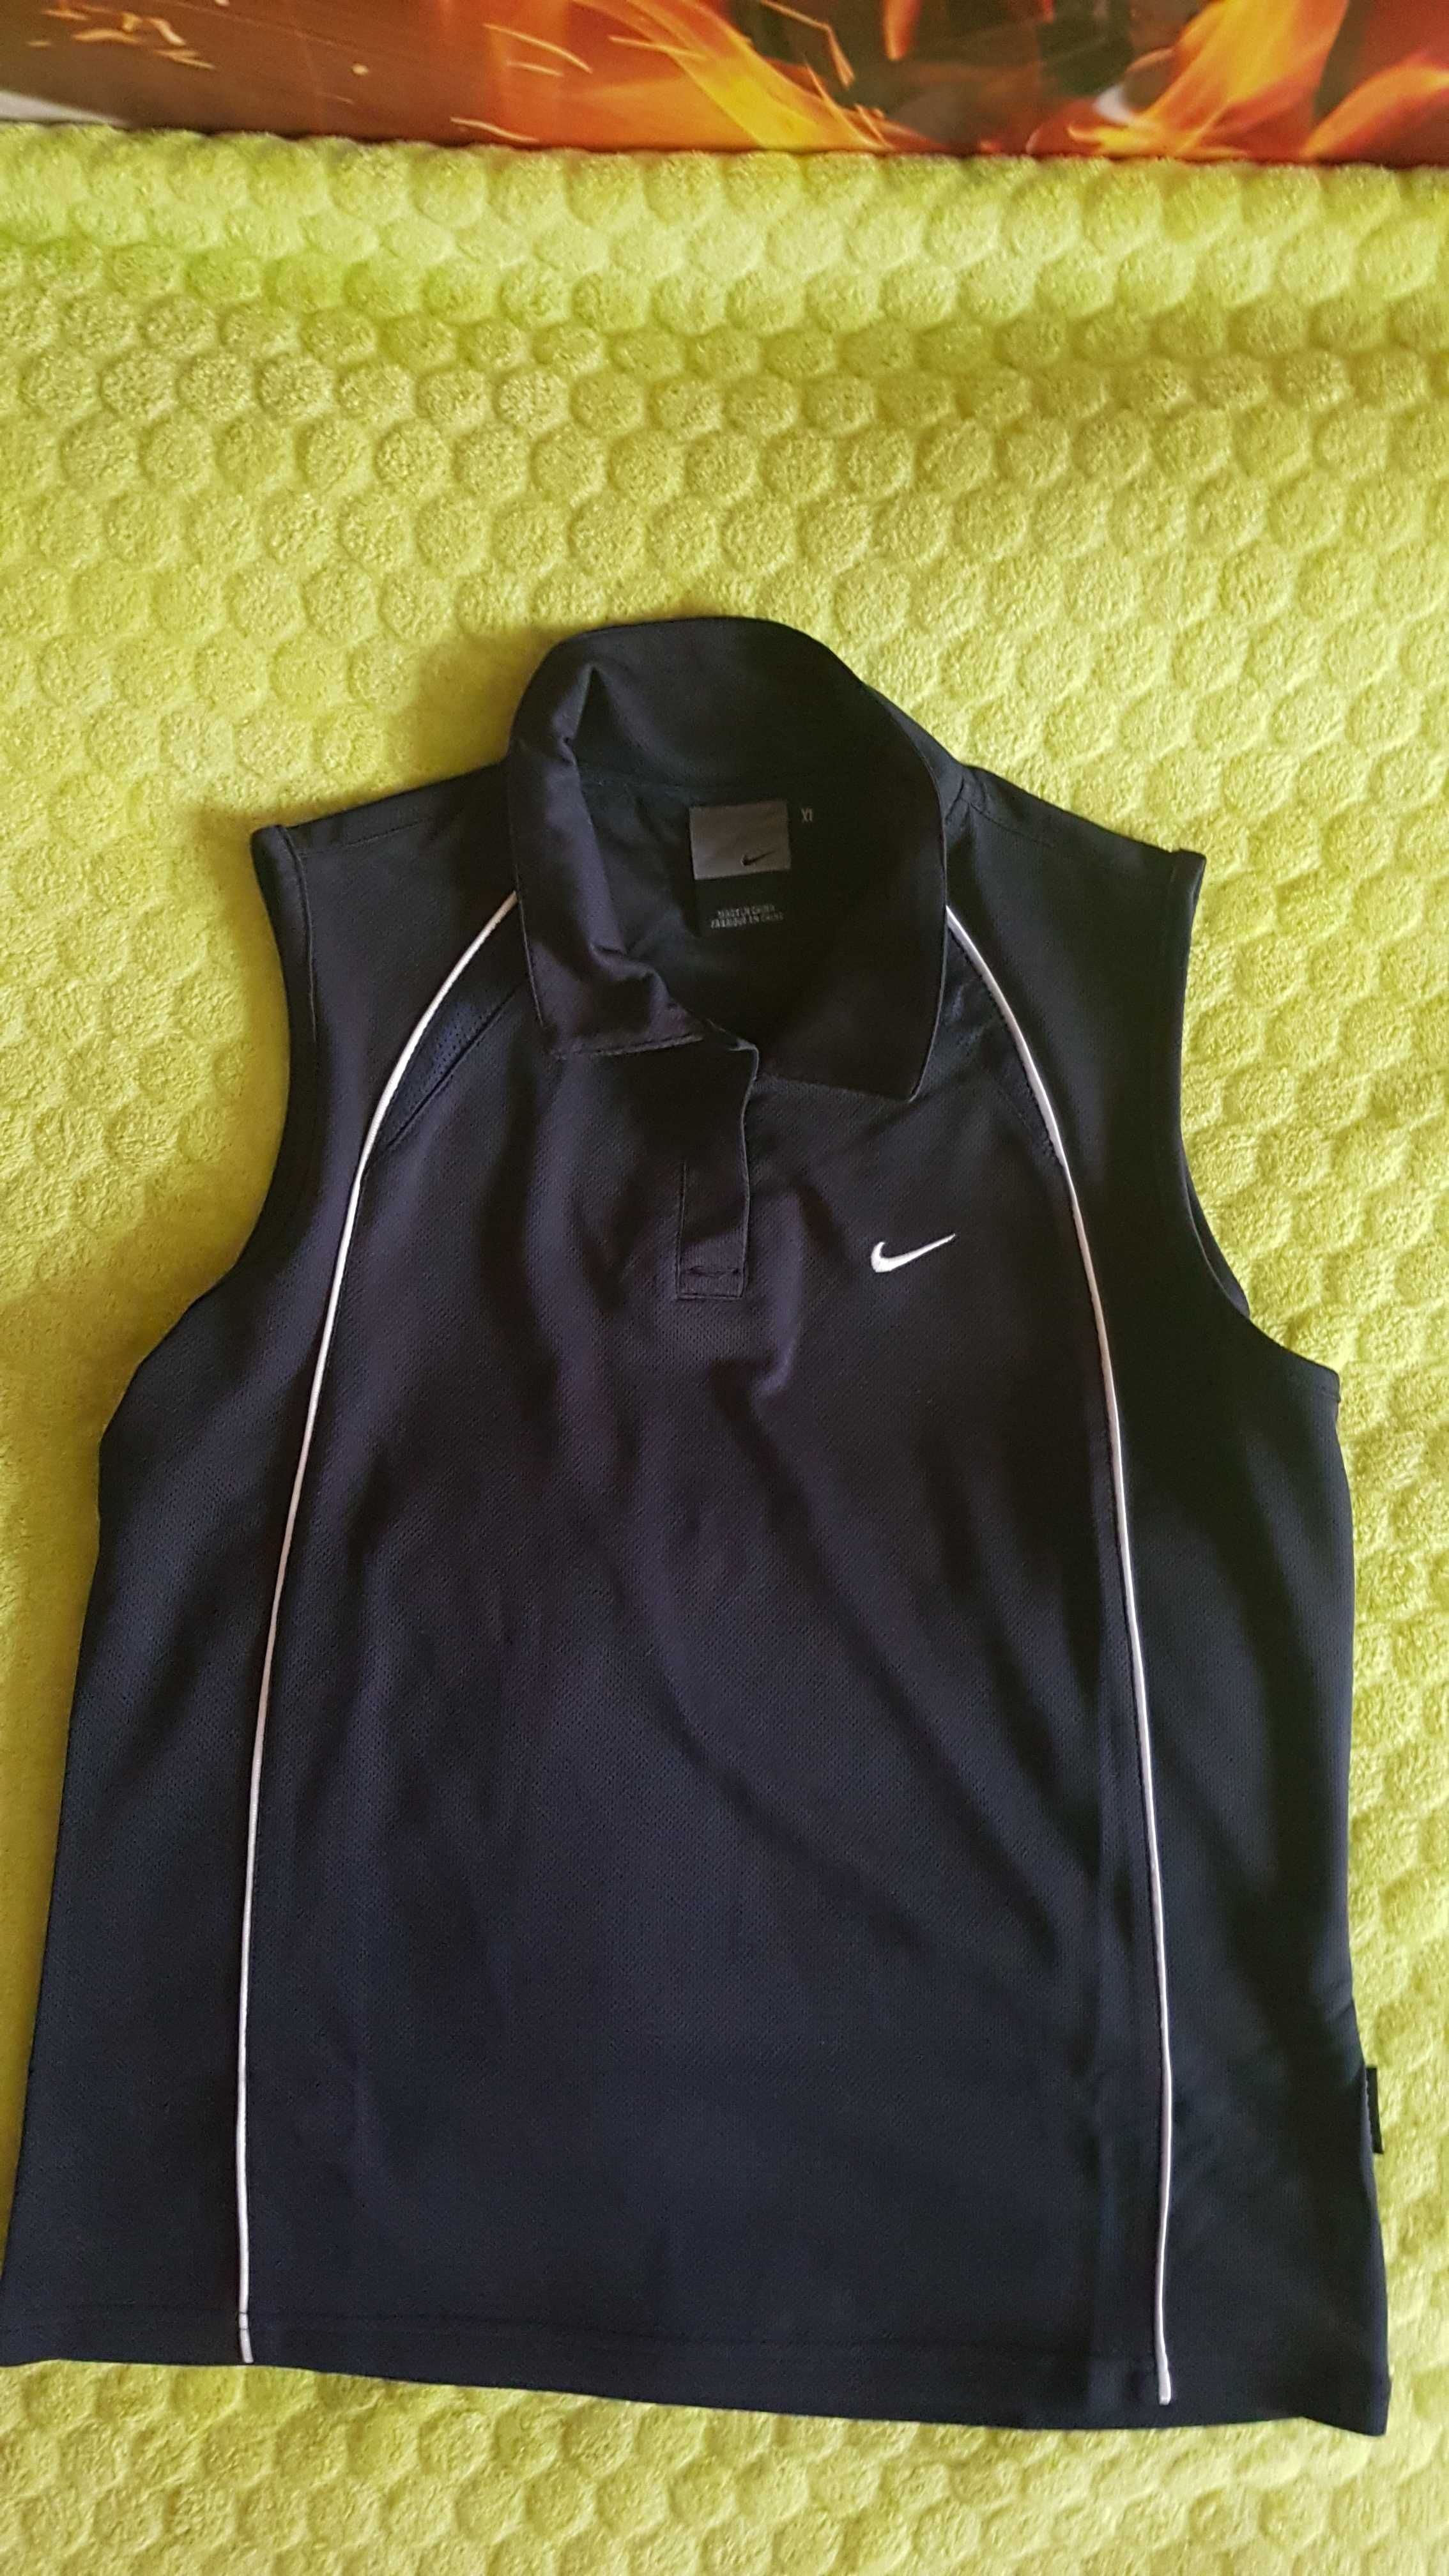 Bluzeczka Nike - S - używana